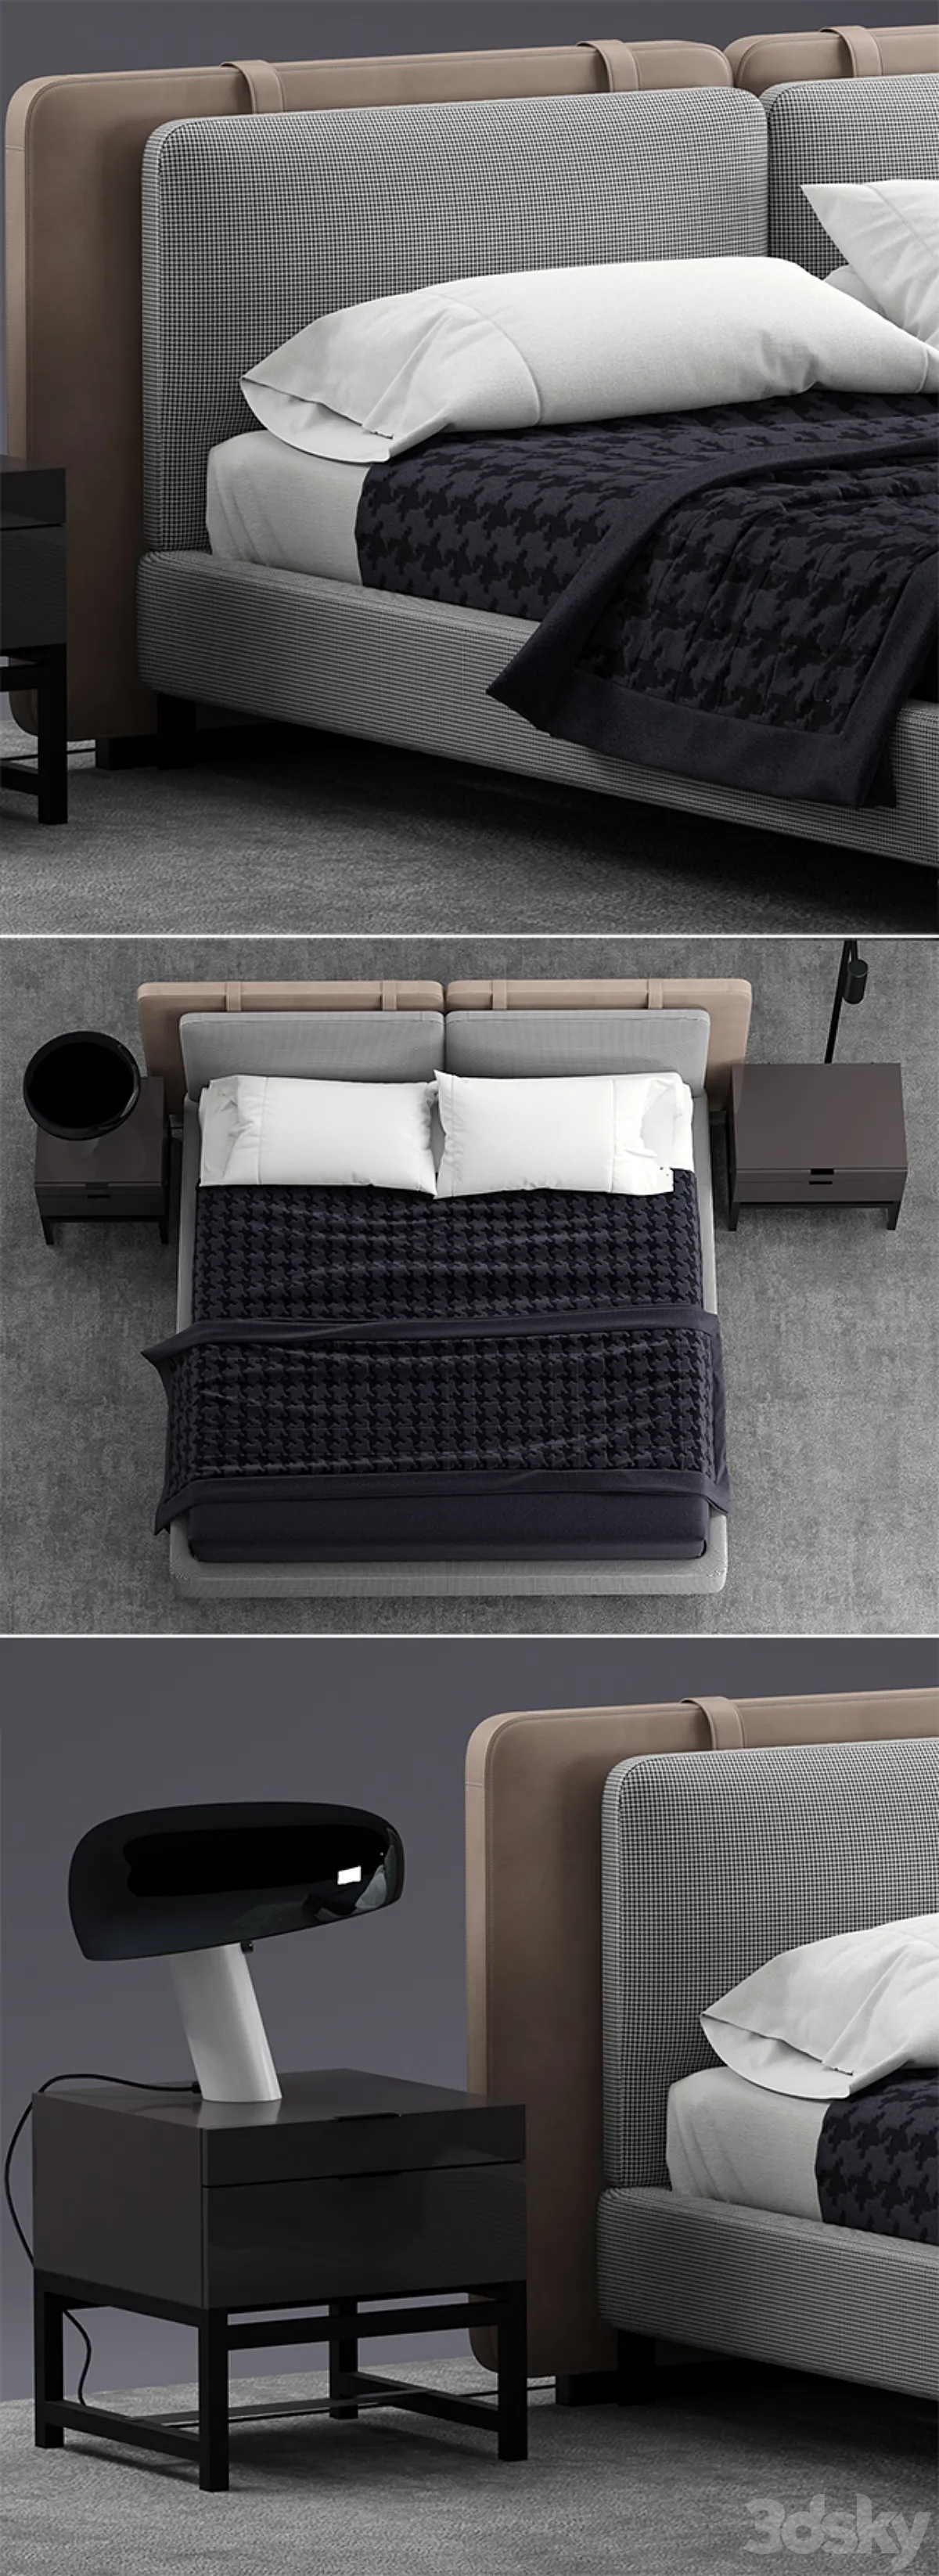 مدل سه بعدی تخت خواب مدرن 32 - 4